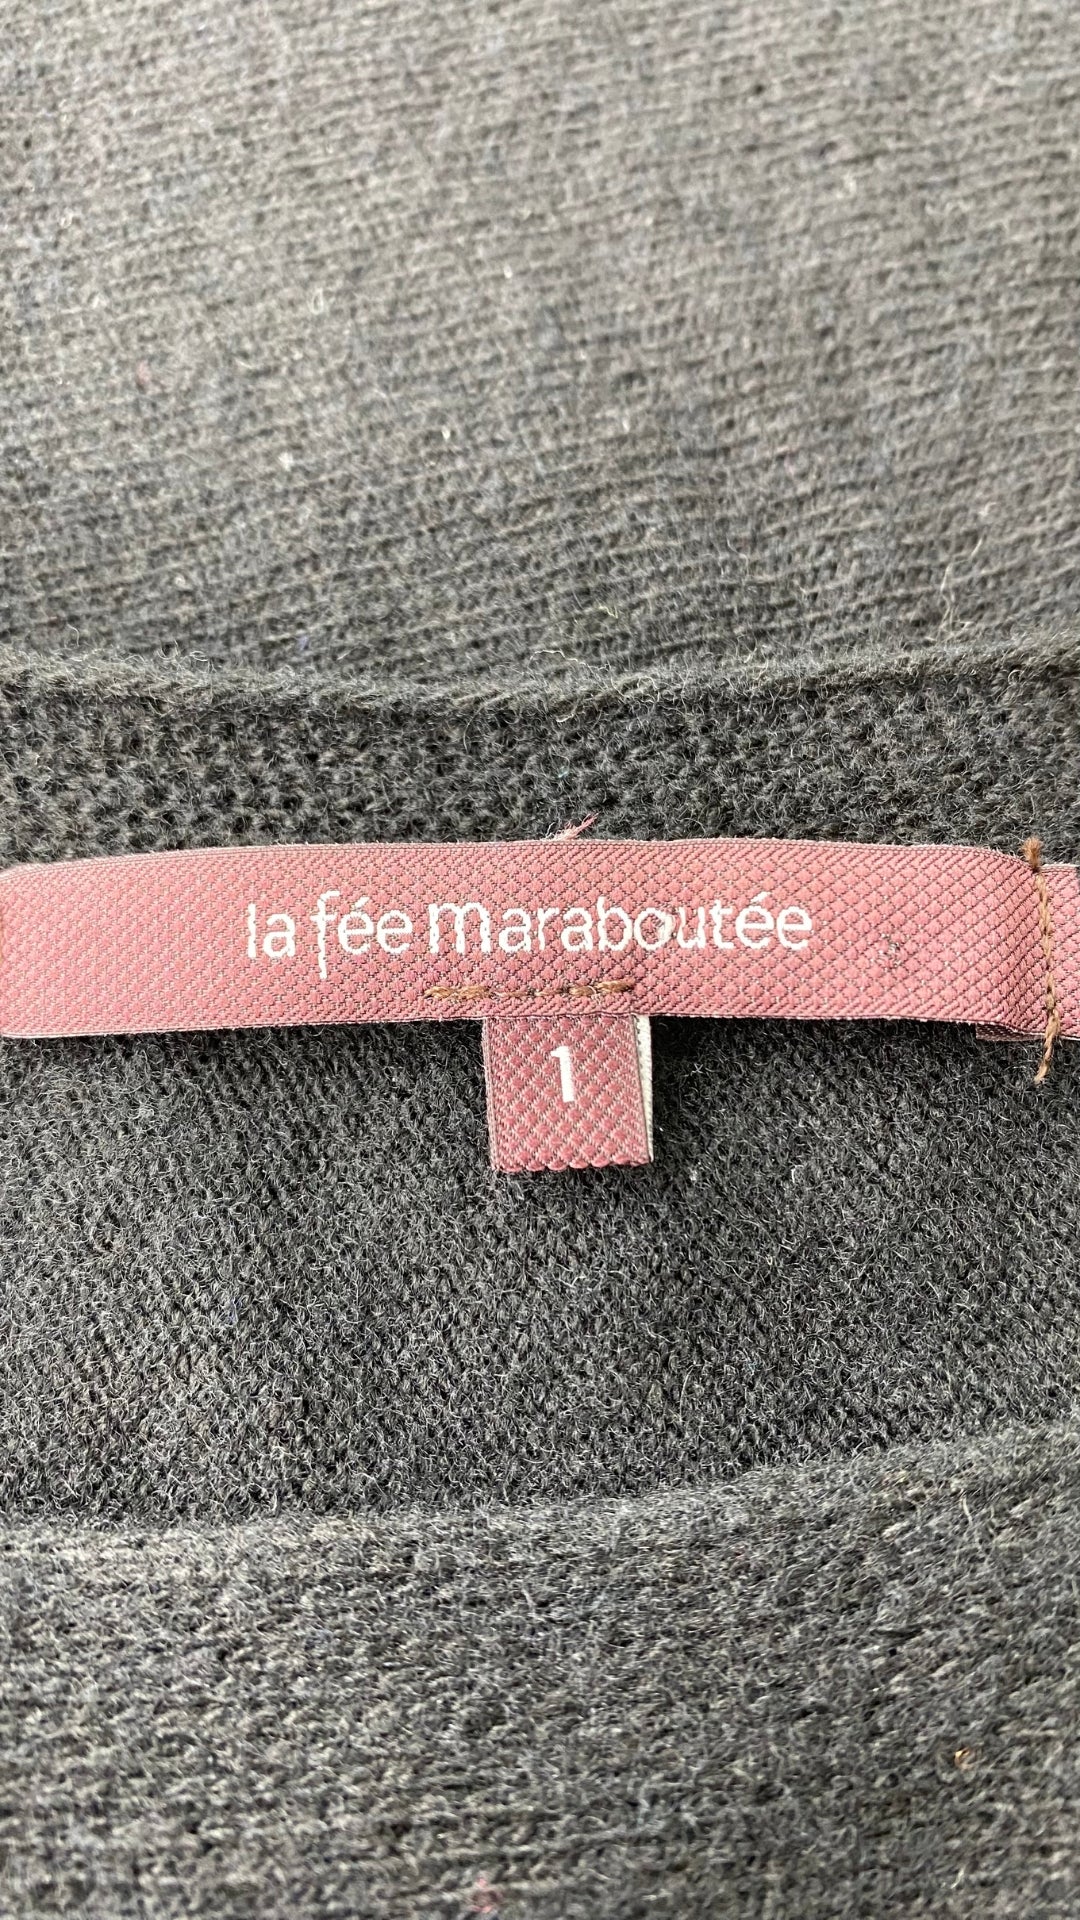 Robe tunique en tricot noir La fée Maraboutée, taille small (1). Vue de l'étiquette de marque et taille.